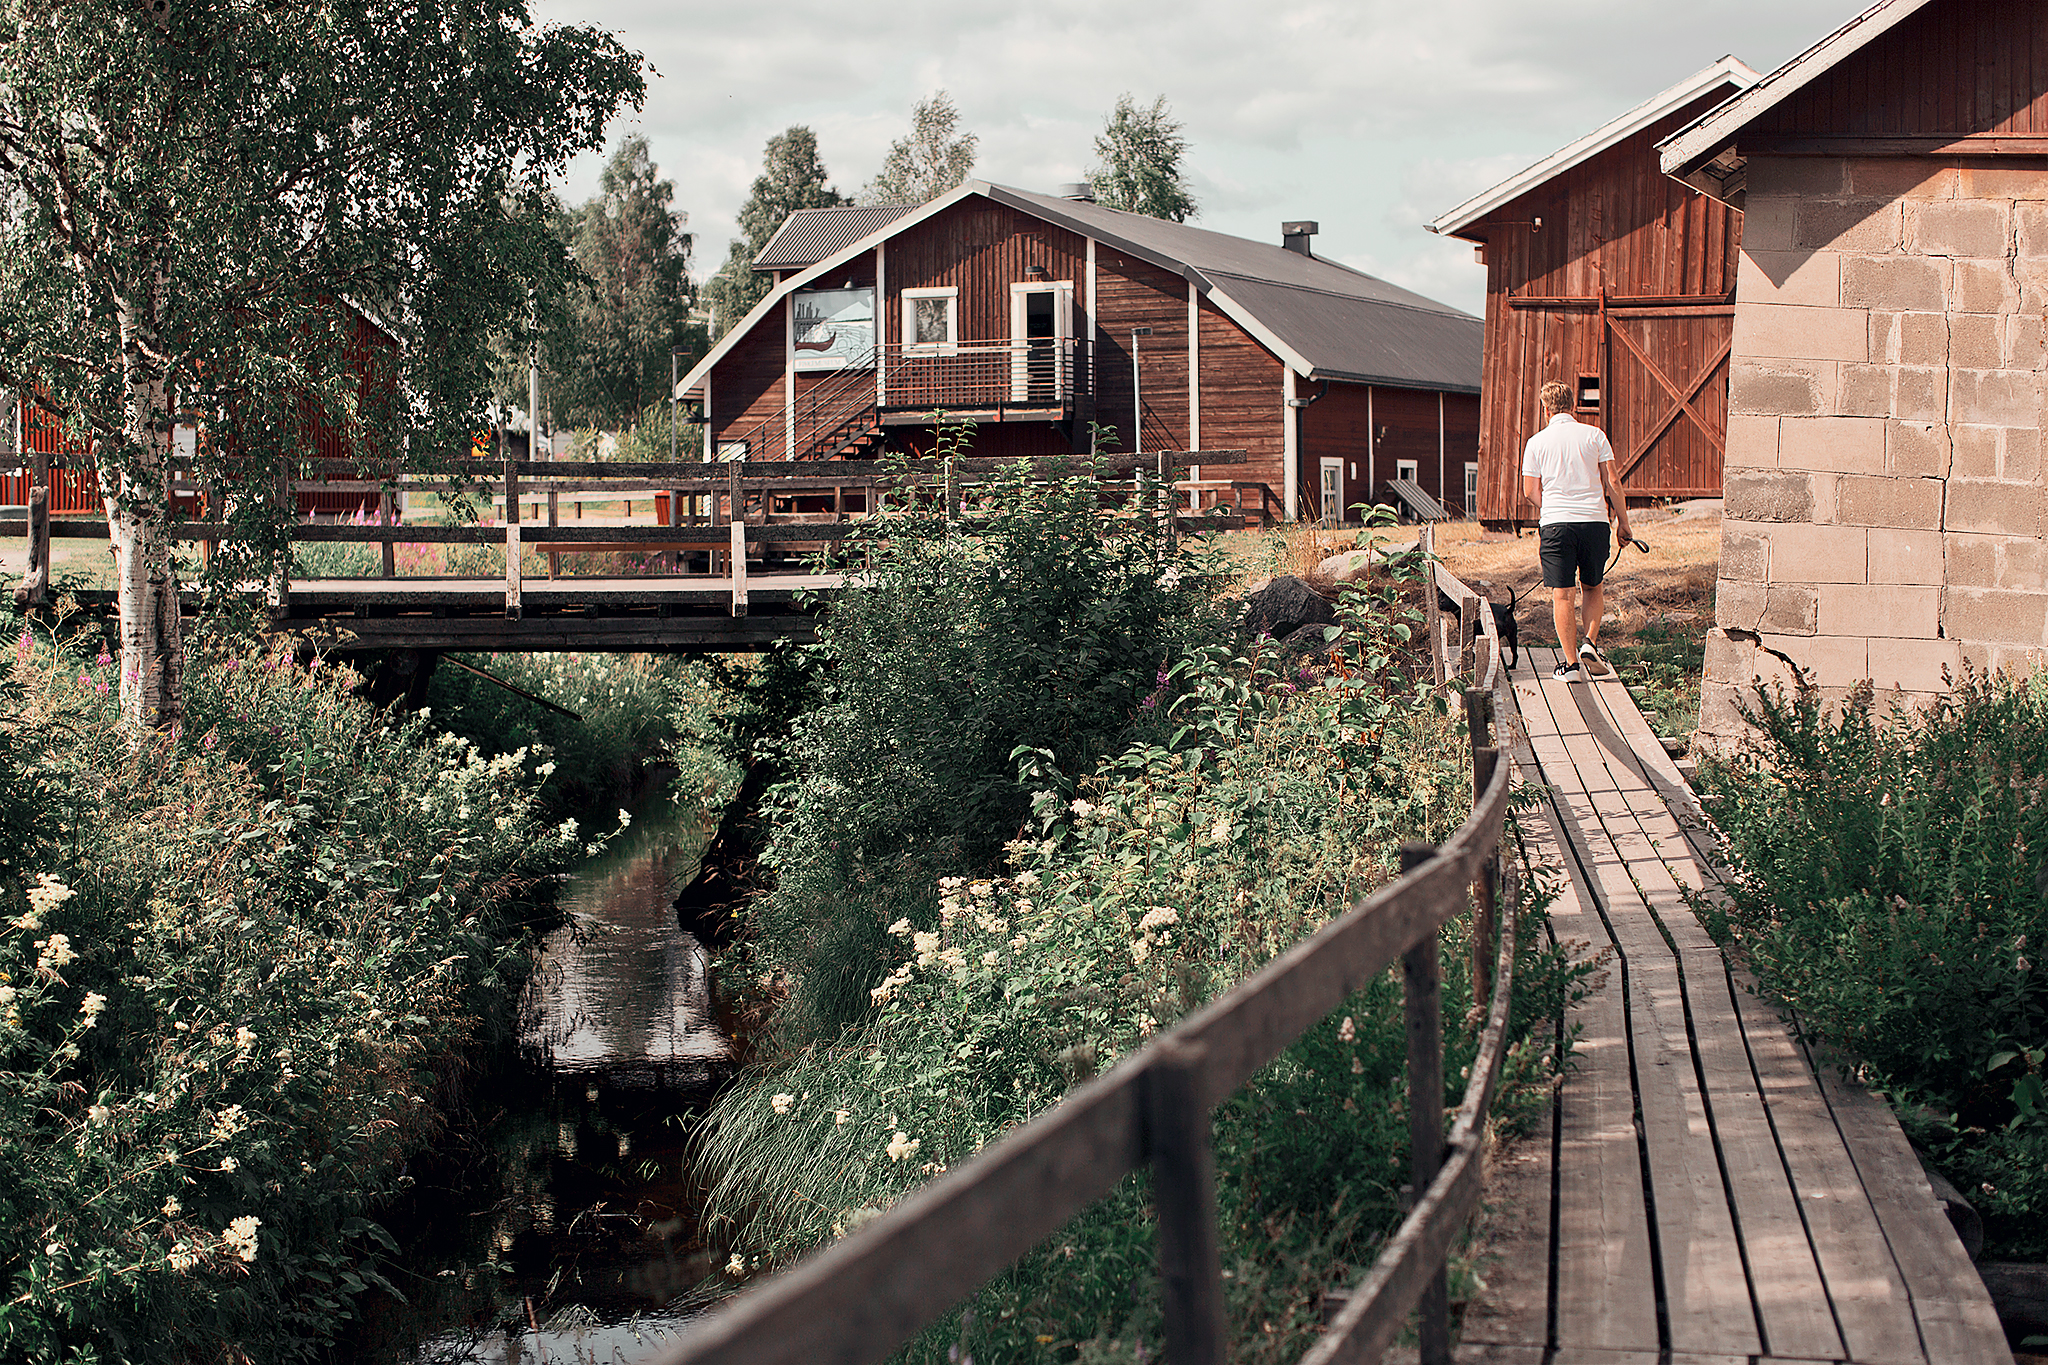 Resedagbok Norrbotten: Kukkolaforsen